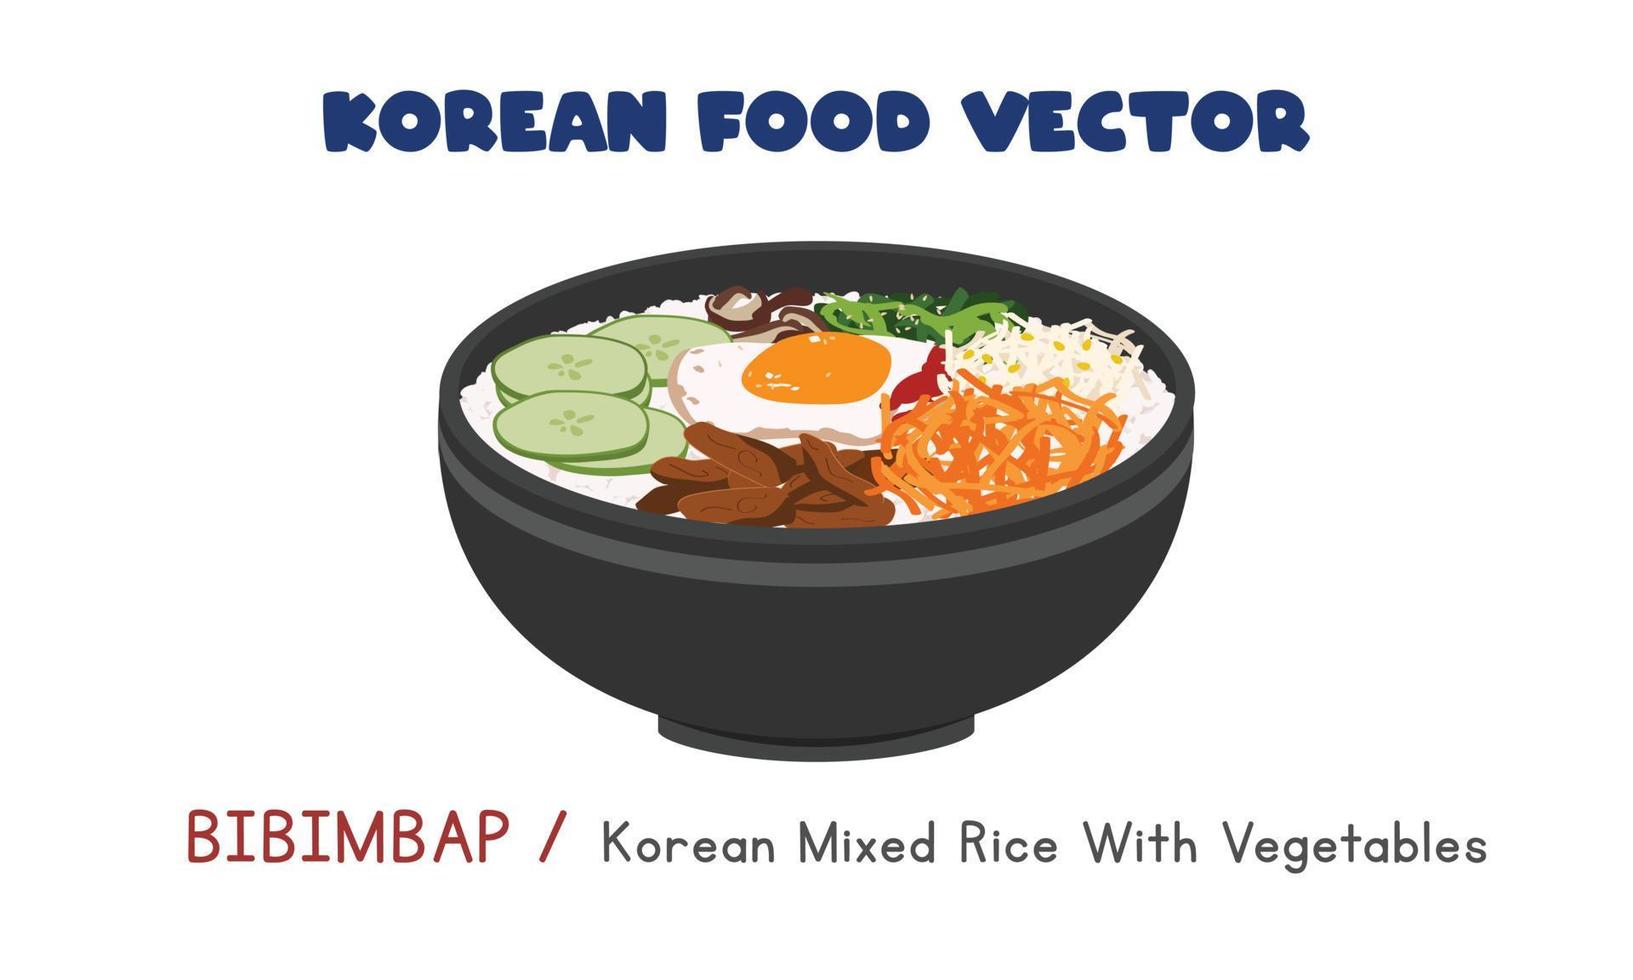 koreanisches bibimbap - koreanischer gemischter reis mit gemüse und ei flache vektordesignillustration, clipart-karikaturart. asiatisches Essen. koreanische Küche. Koreanisches Essen vektor